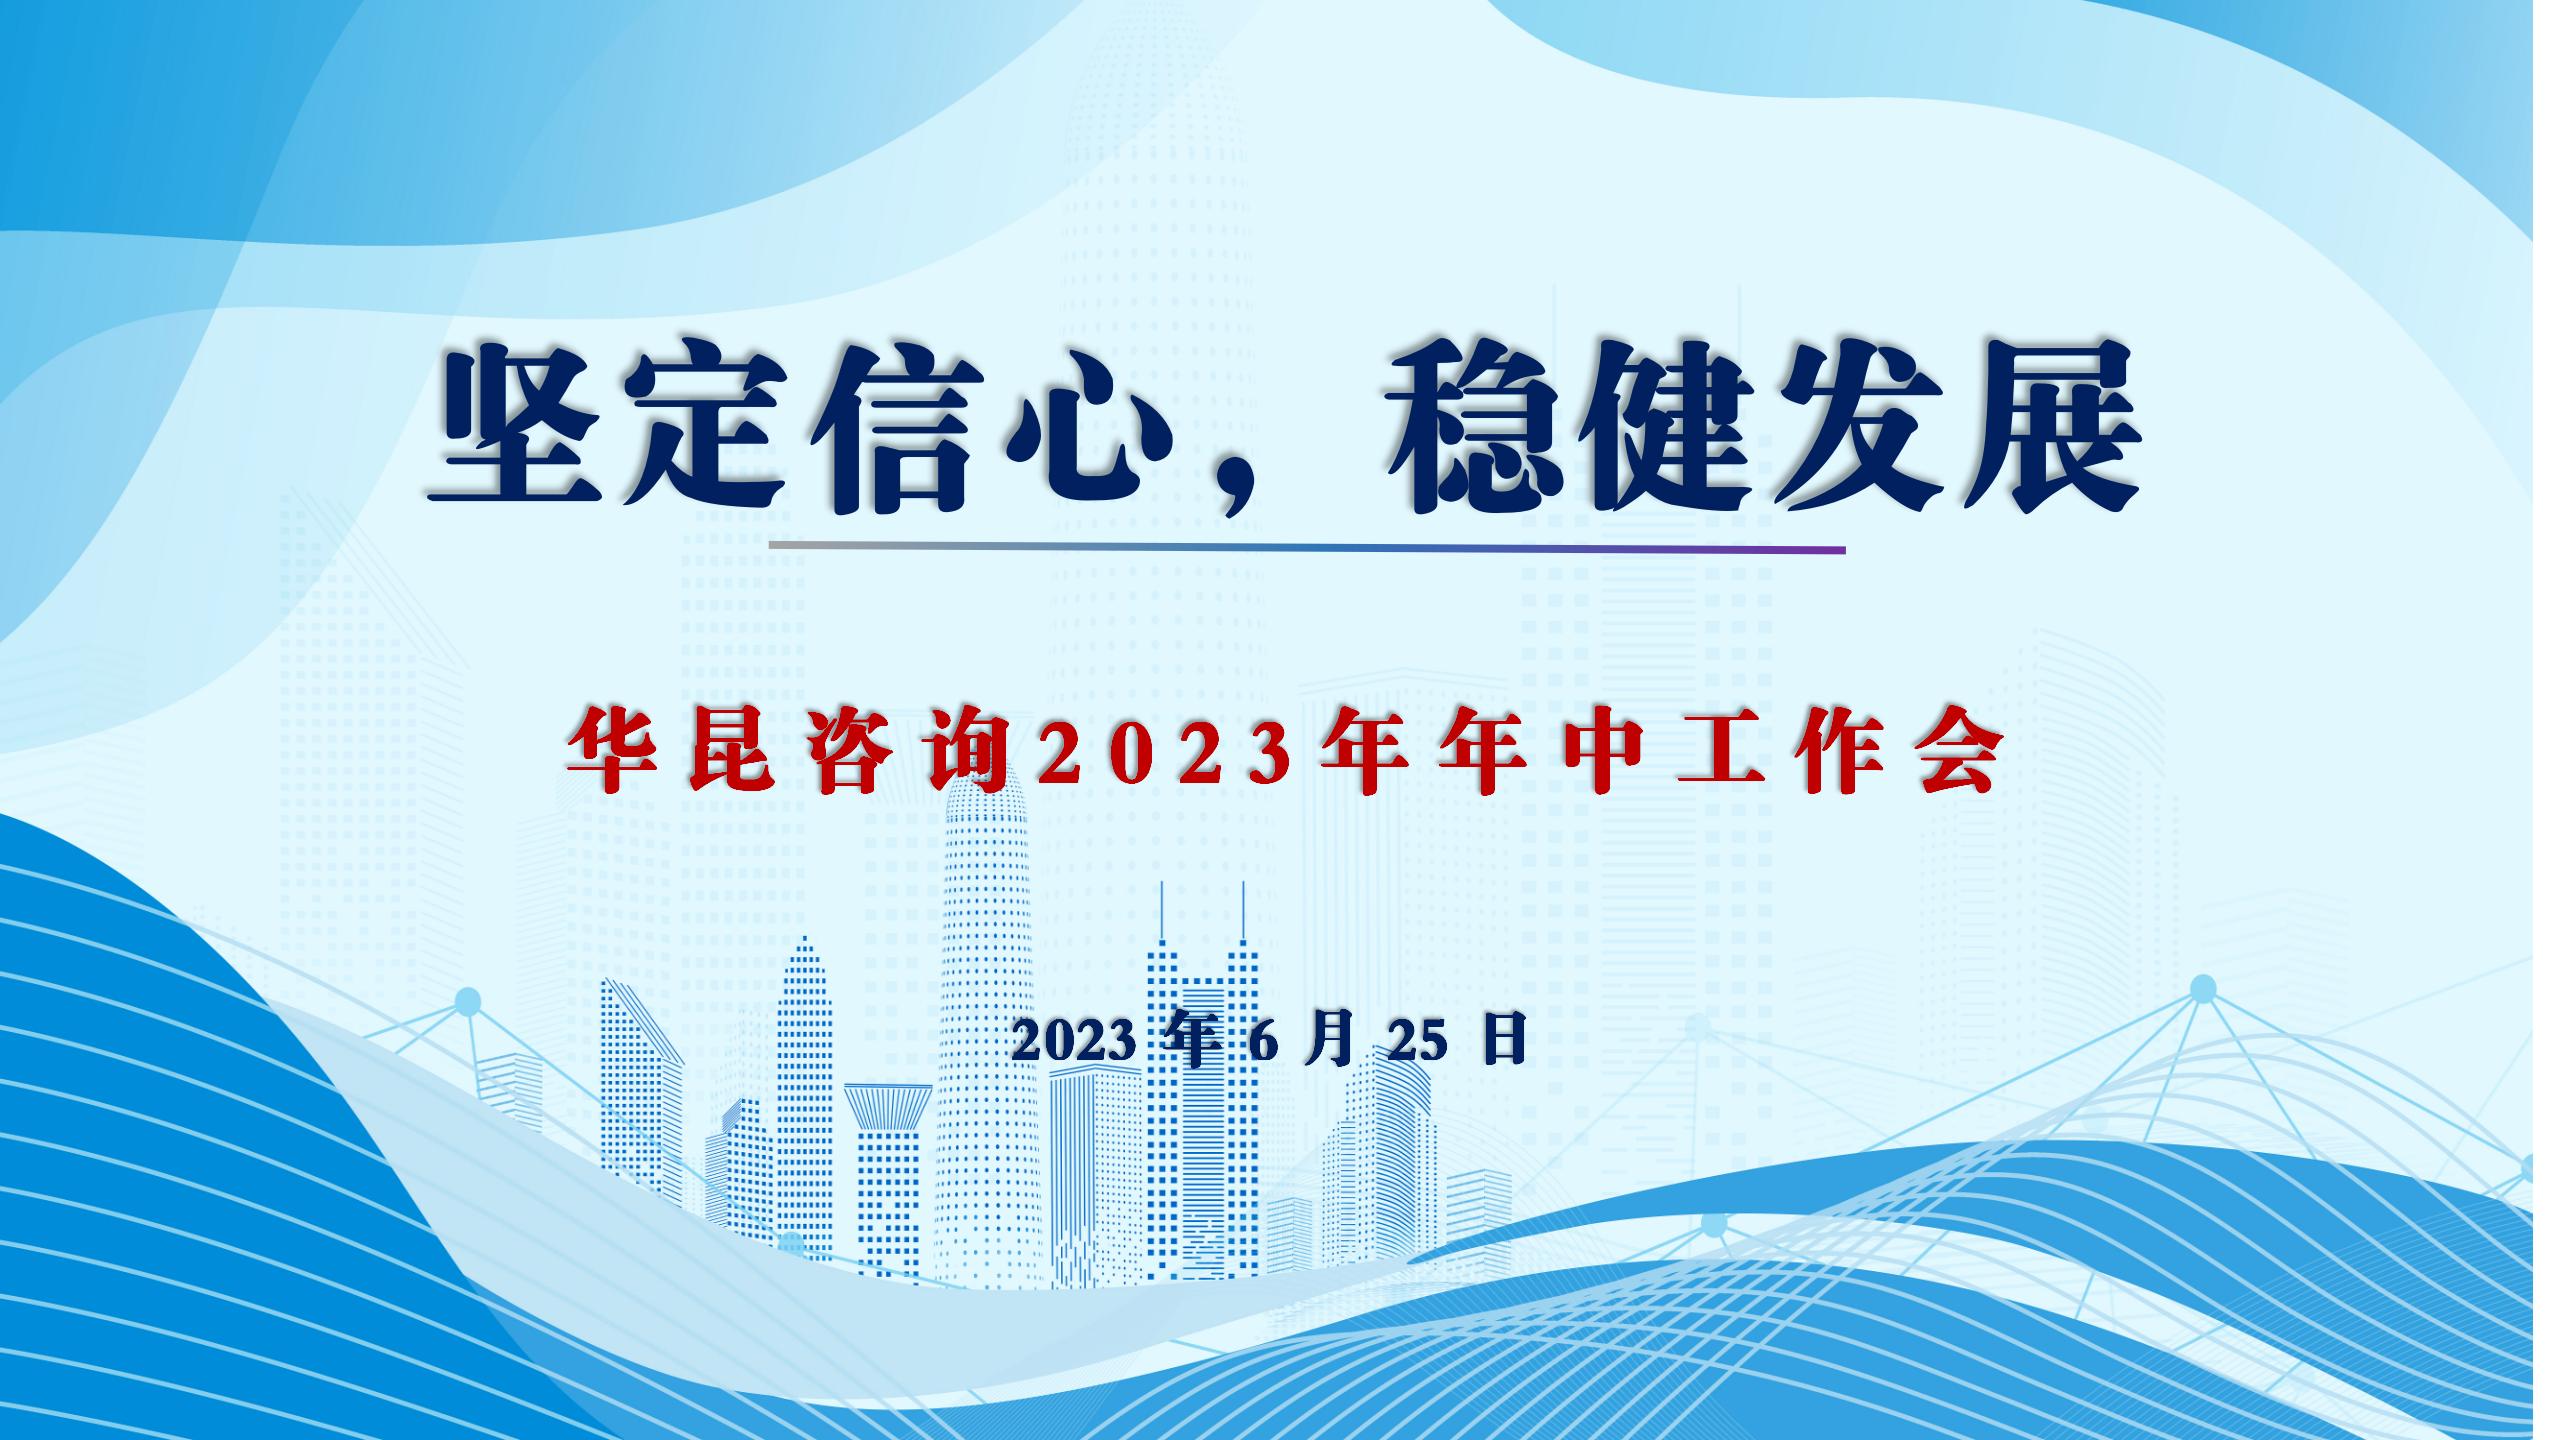 坚定信心，稳健发展——华昆咨询2023年年中工作会